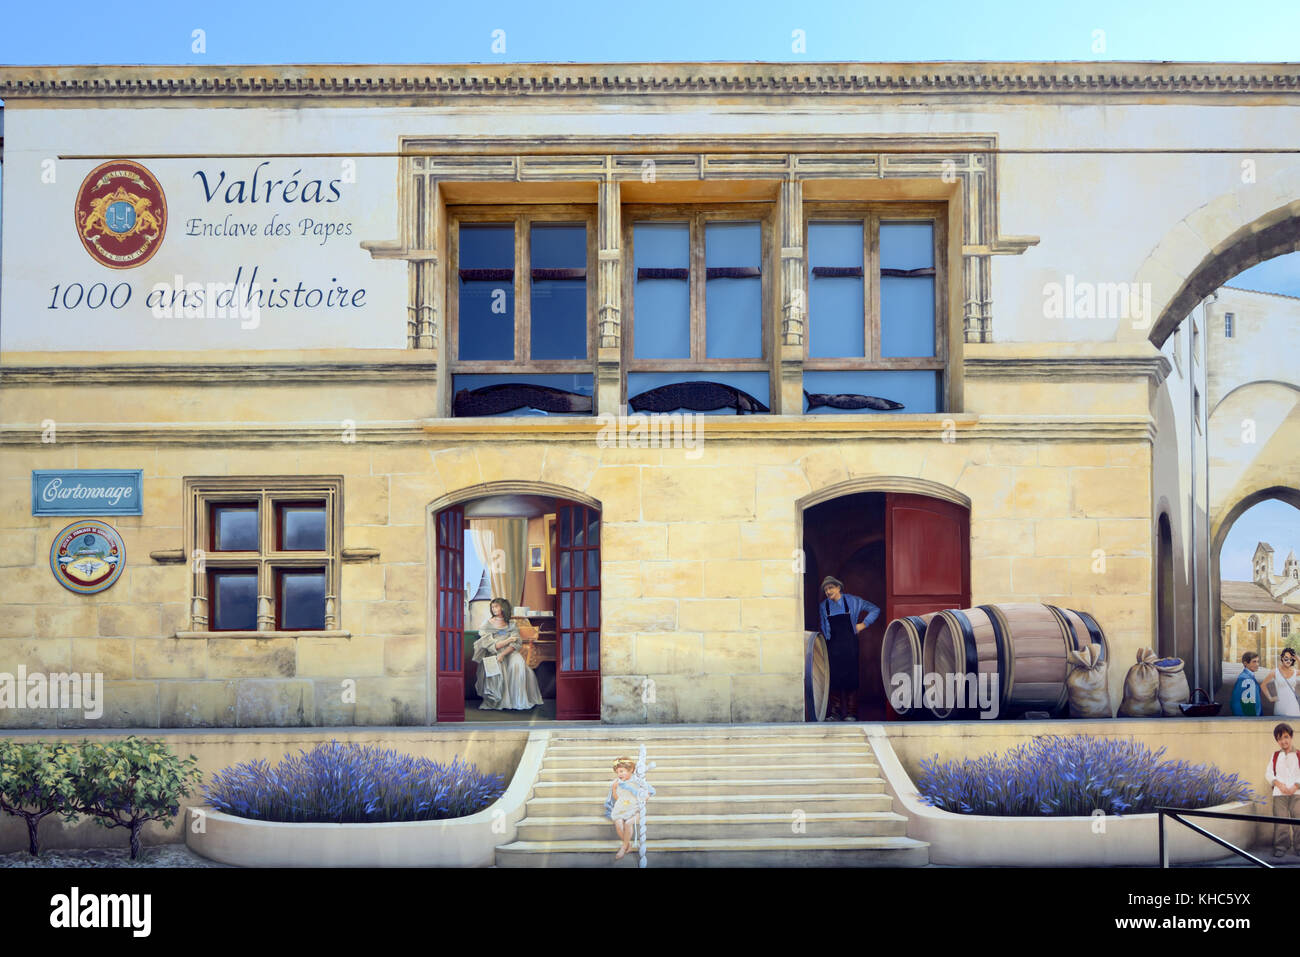 Peinture murale trompe l'œil, ancien bâtiment de la gare, avec des fûts de vin ou un vignoble, et fausse architecture médiévale, Valreas, Provence, France Banque D'Images